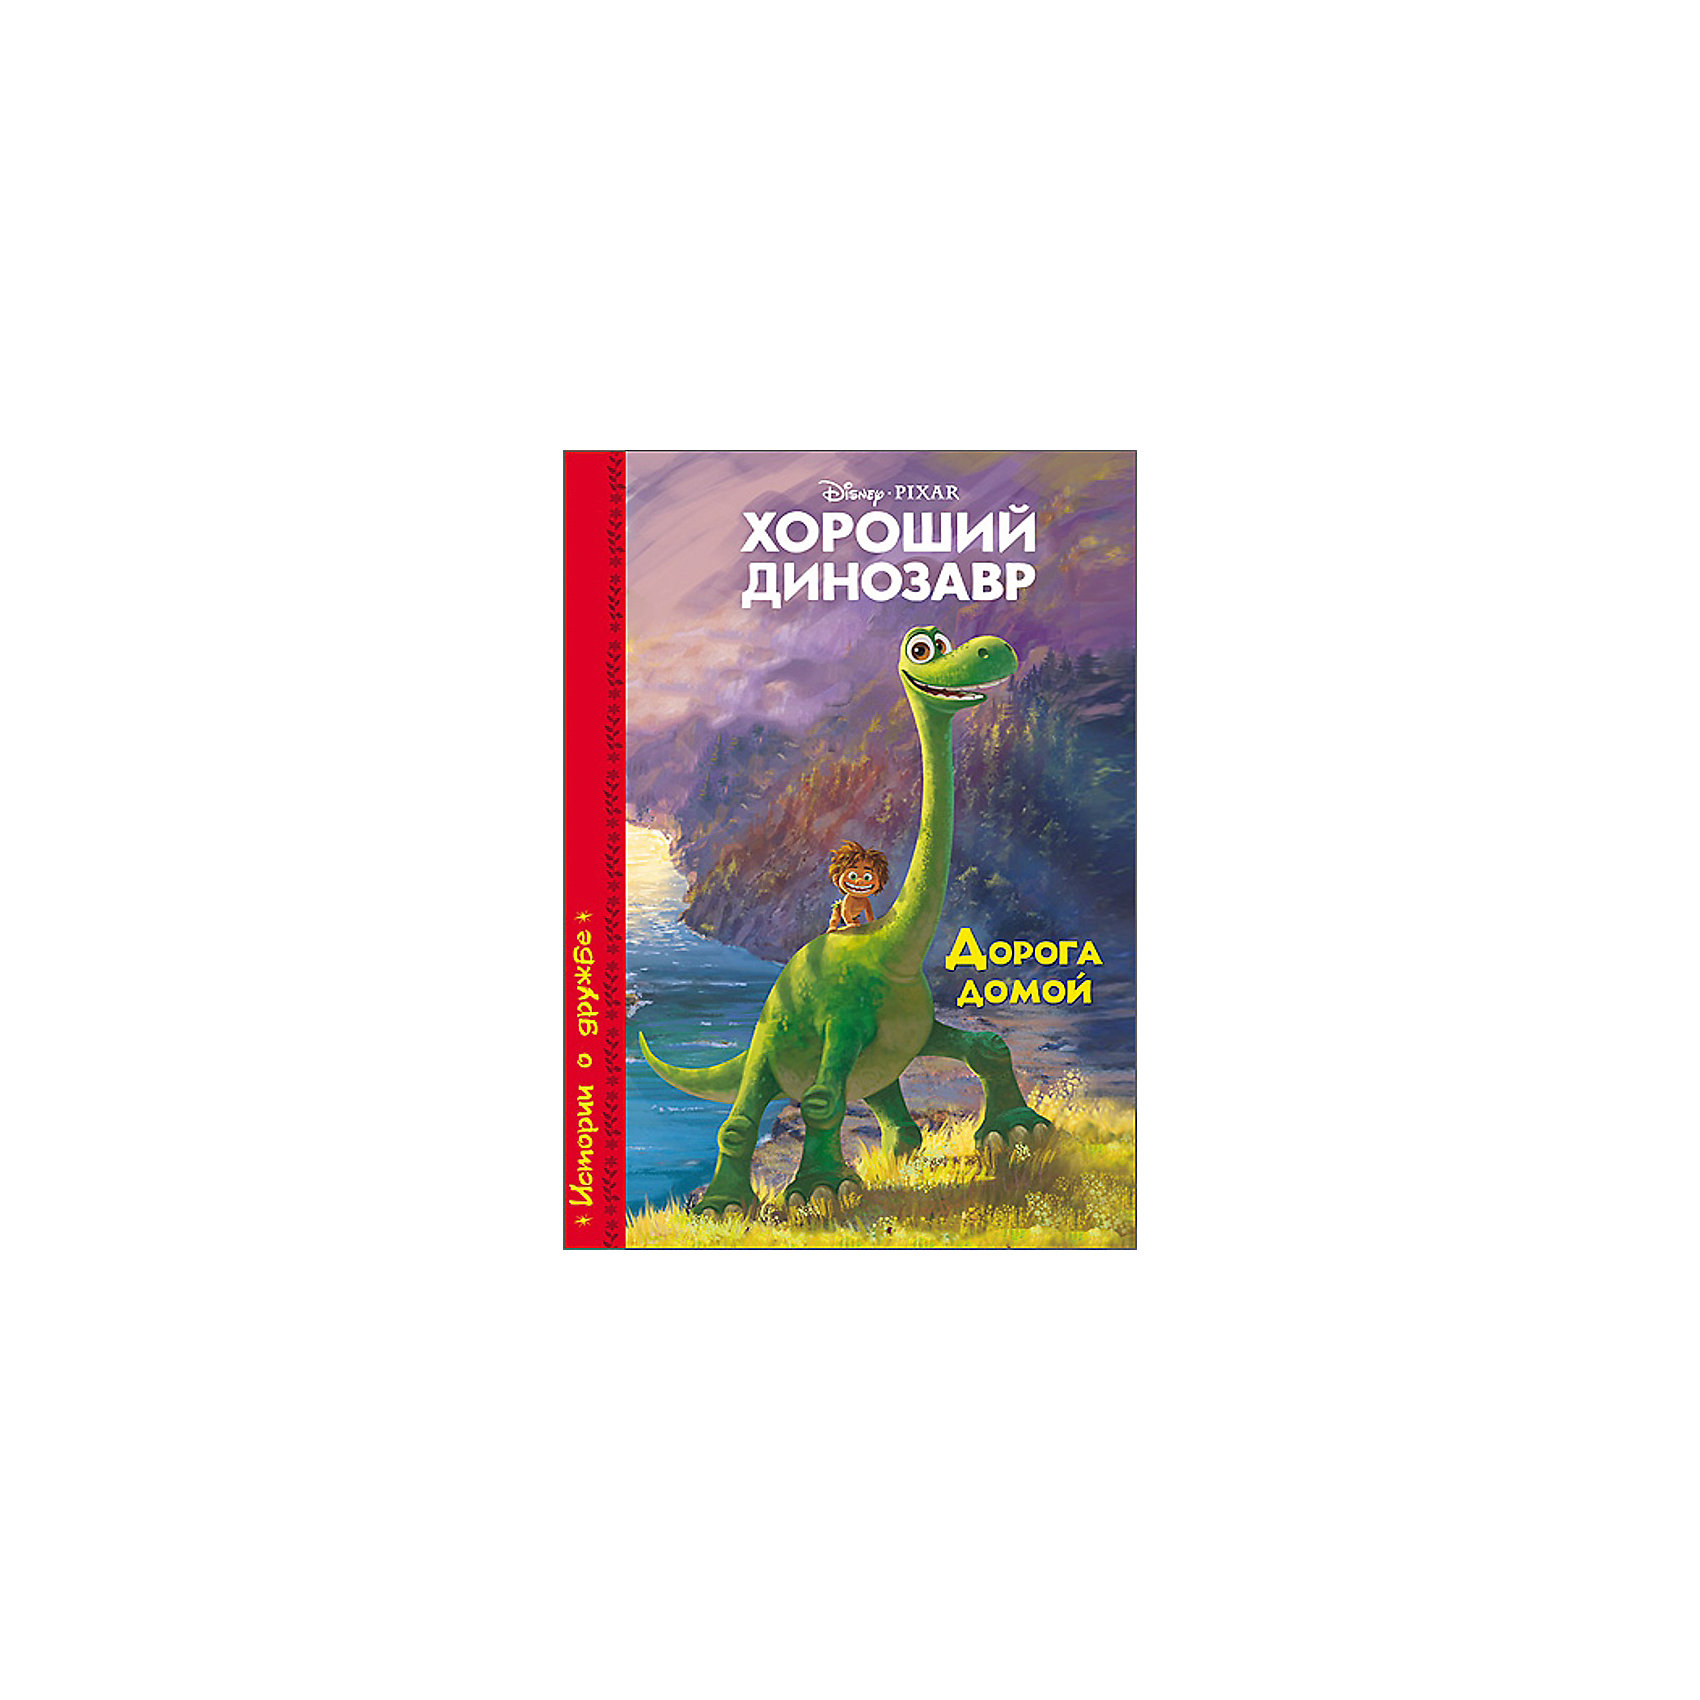 Динозавров дороги. Эксмо хороший динозавр. Дорога домой. Книга хороший динозавр дорога домой. Книжка хороший динозавр. Добрая книга про динозавров.